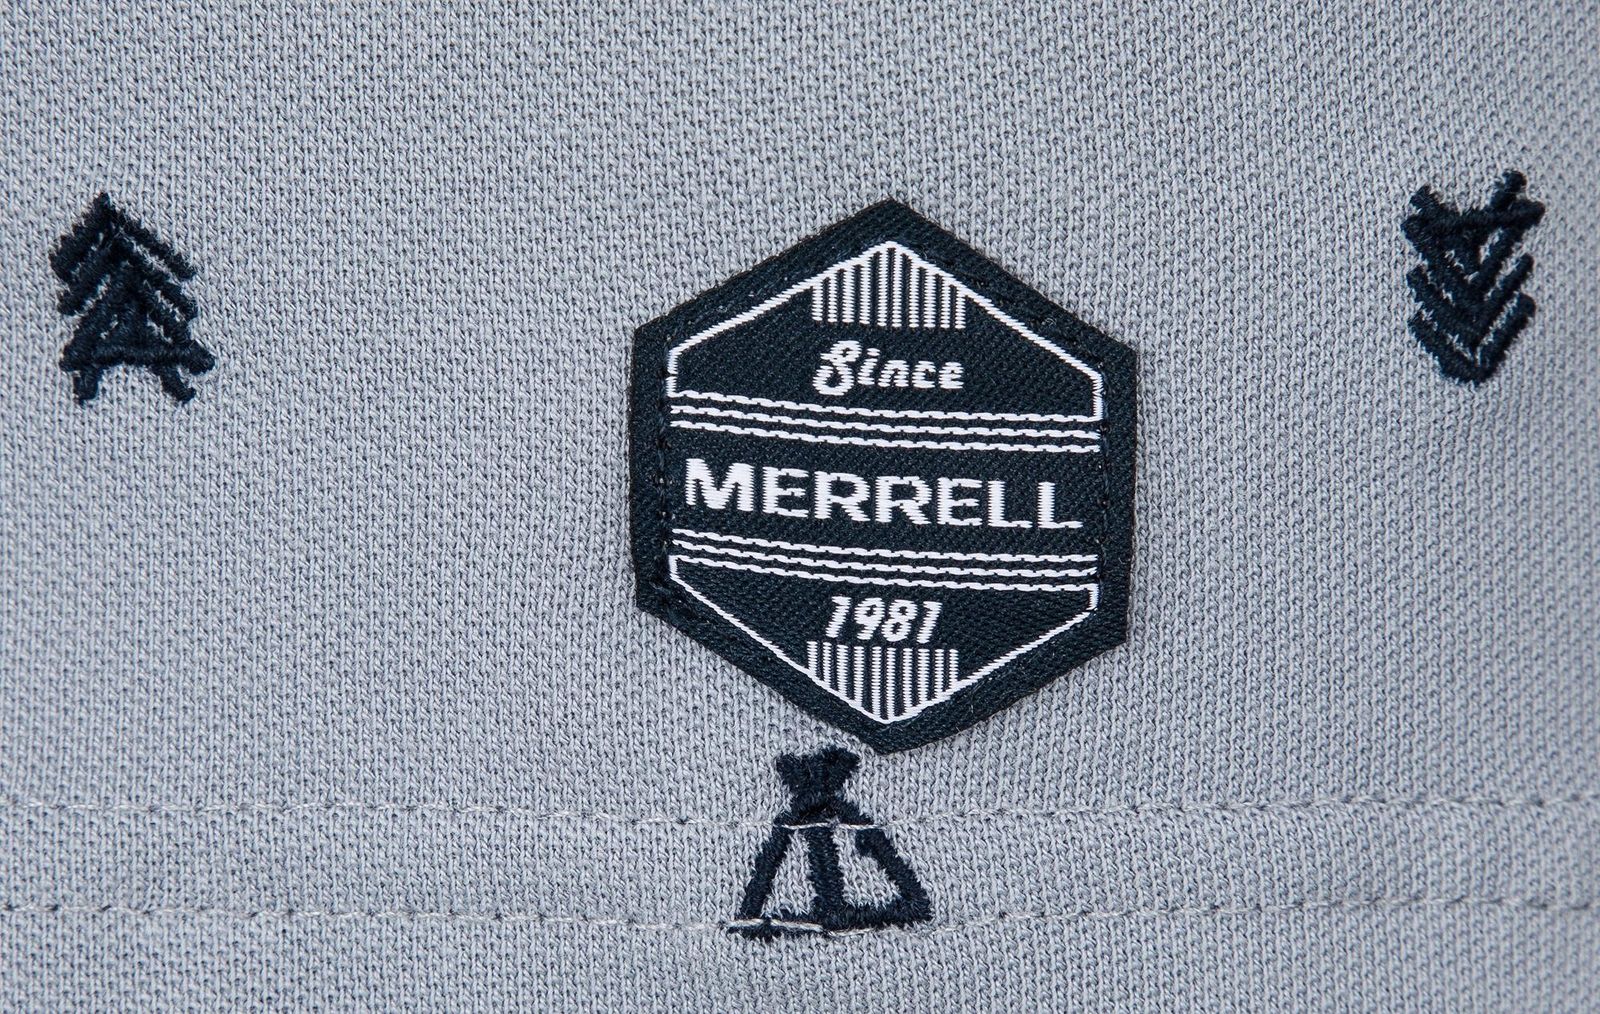   Merrell Men's Polo, : . S19AMRPOM01-Q1.  48